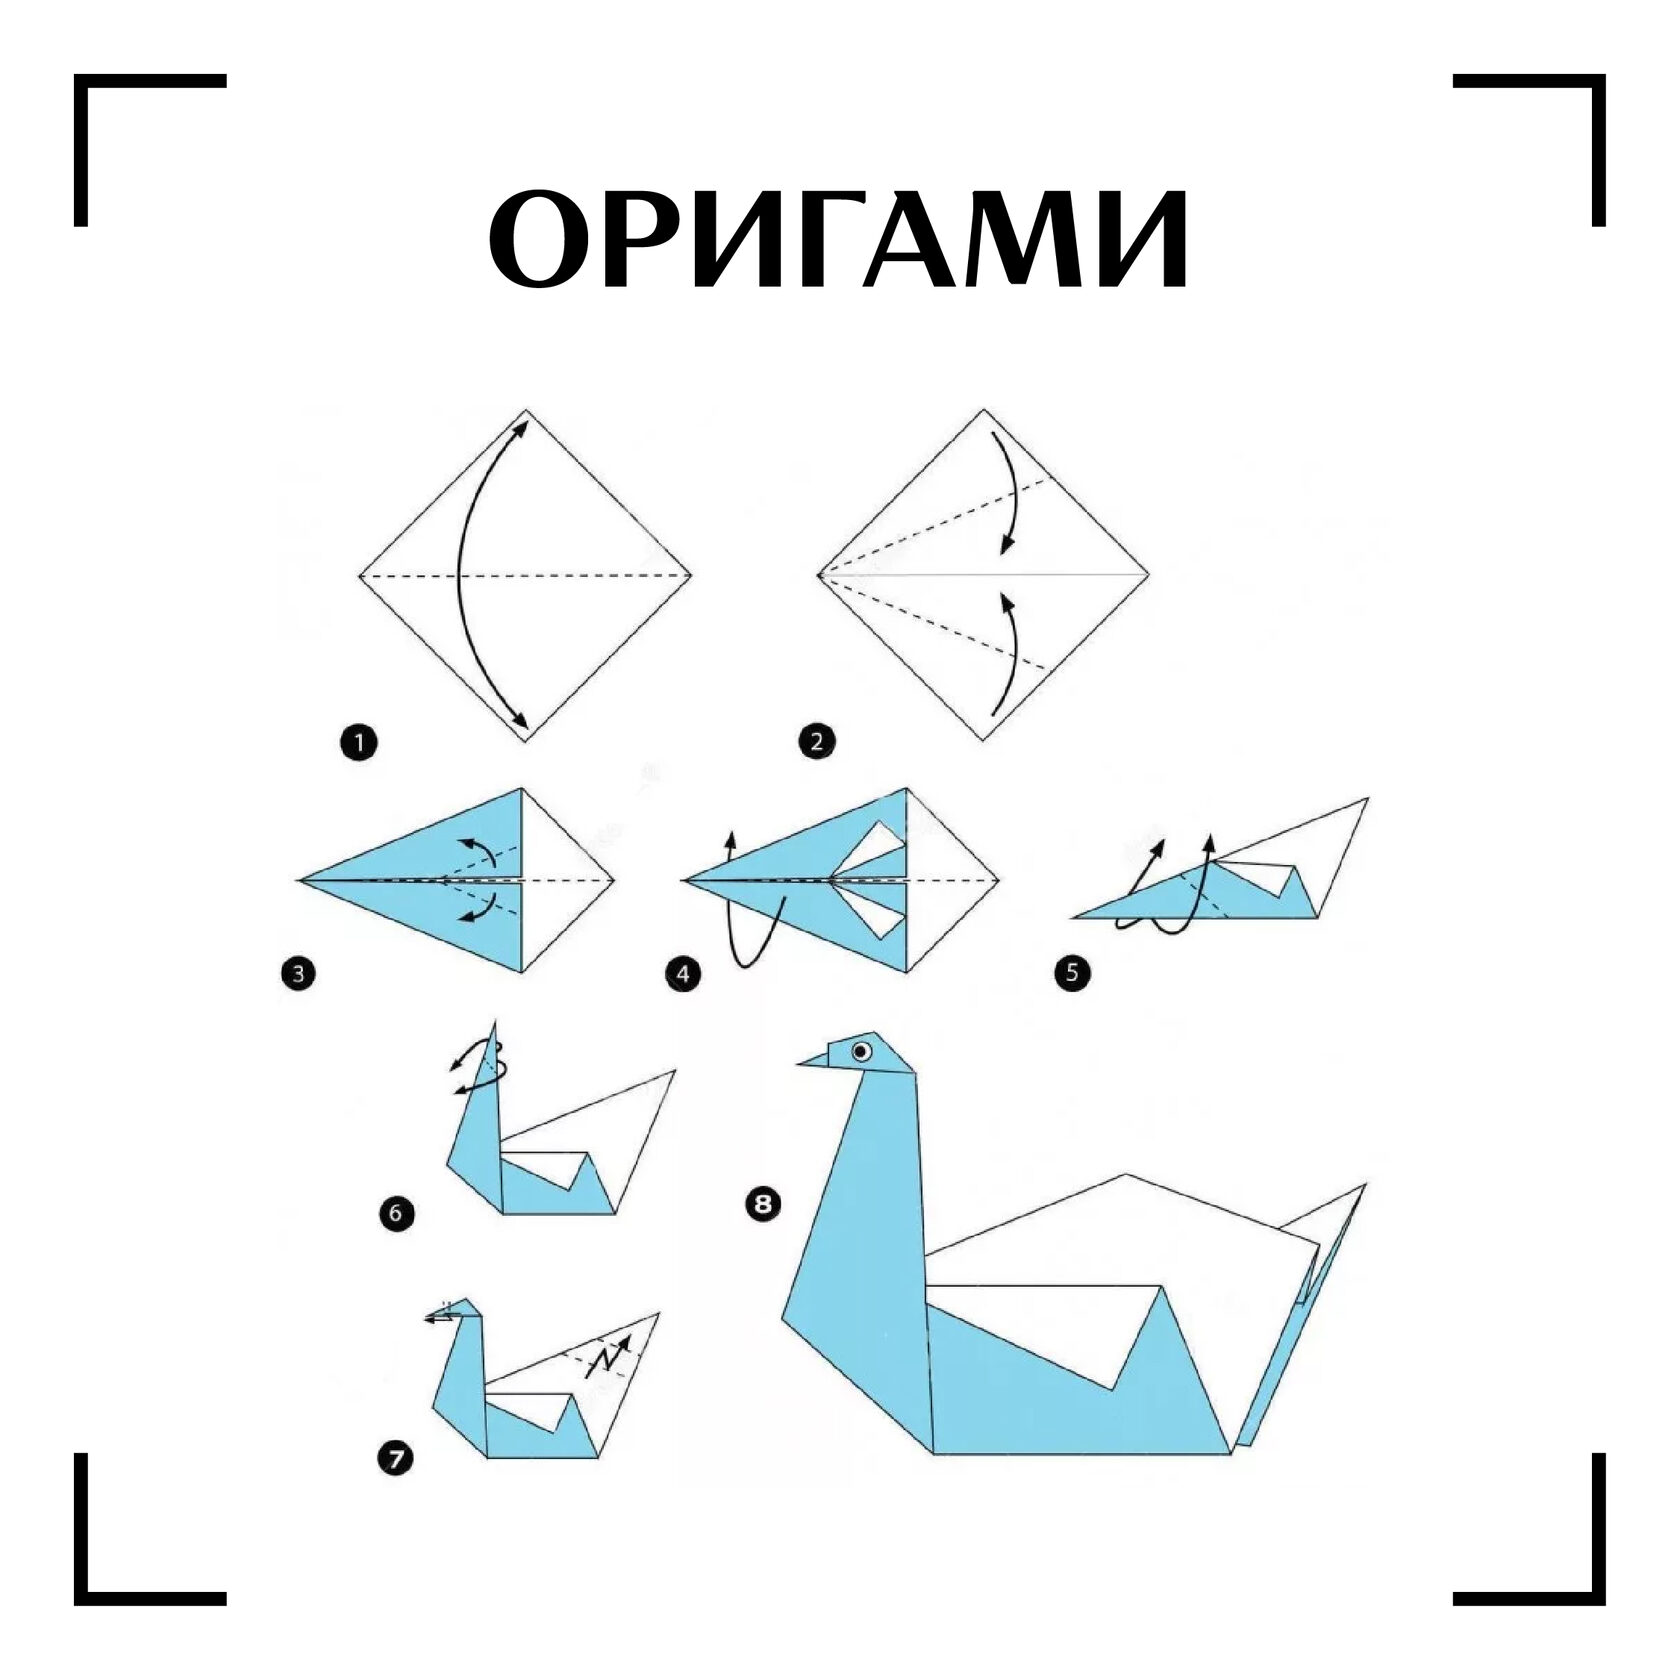 Лебедь из бумаги инструкция. Оригами лебедь схема. Оригами птичка схема лебедь. Как сделать лебедя из бумаги пошагово. Оригами лебедь пошагово для детей.